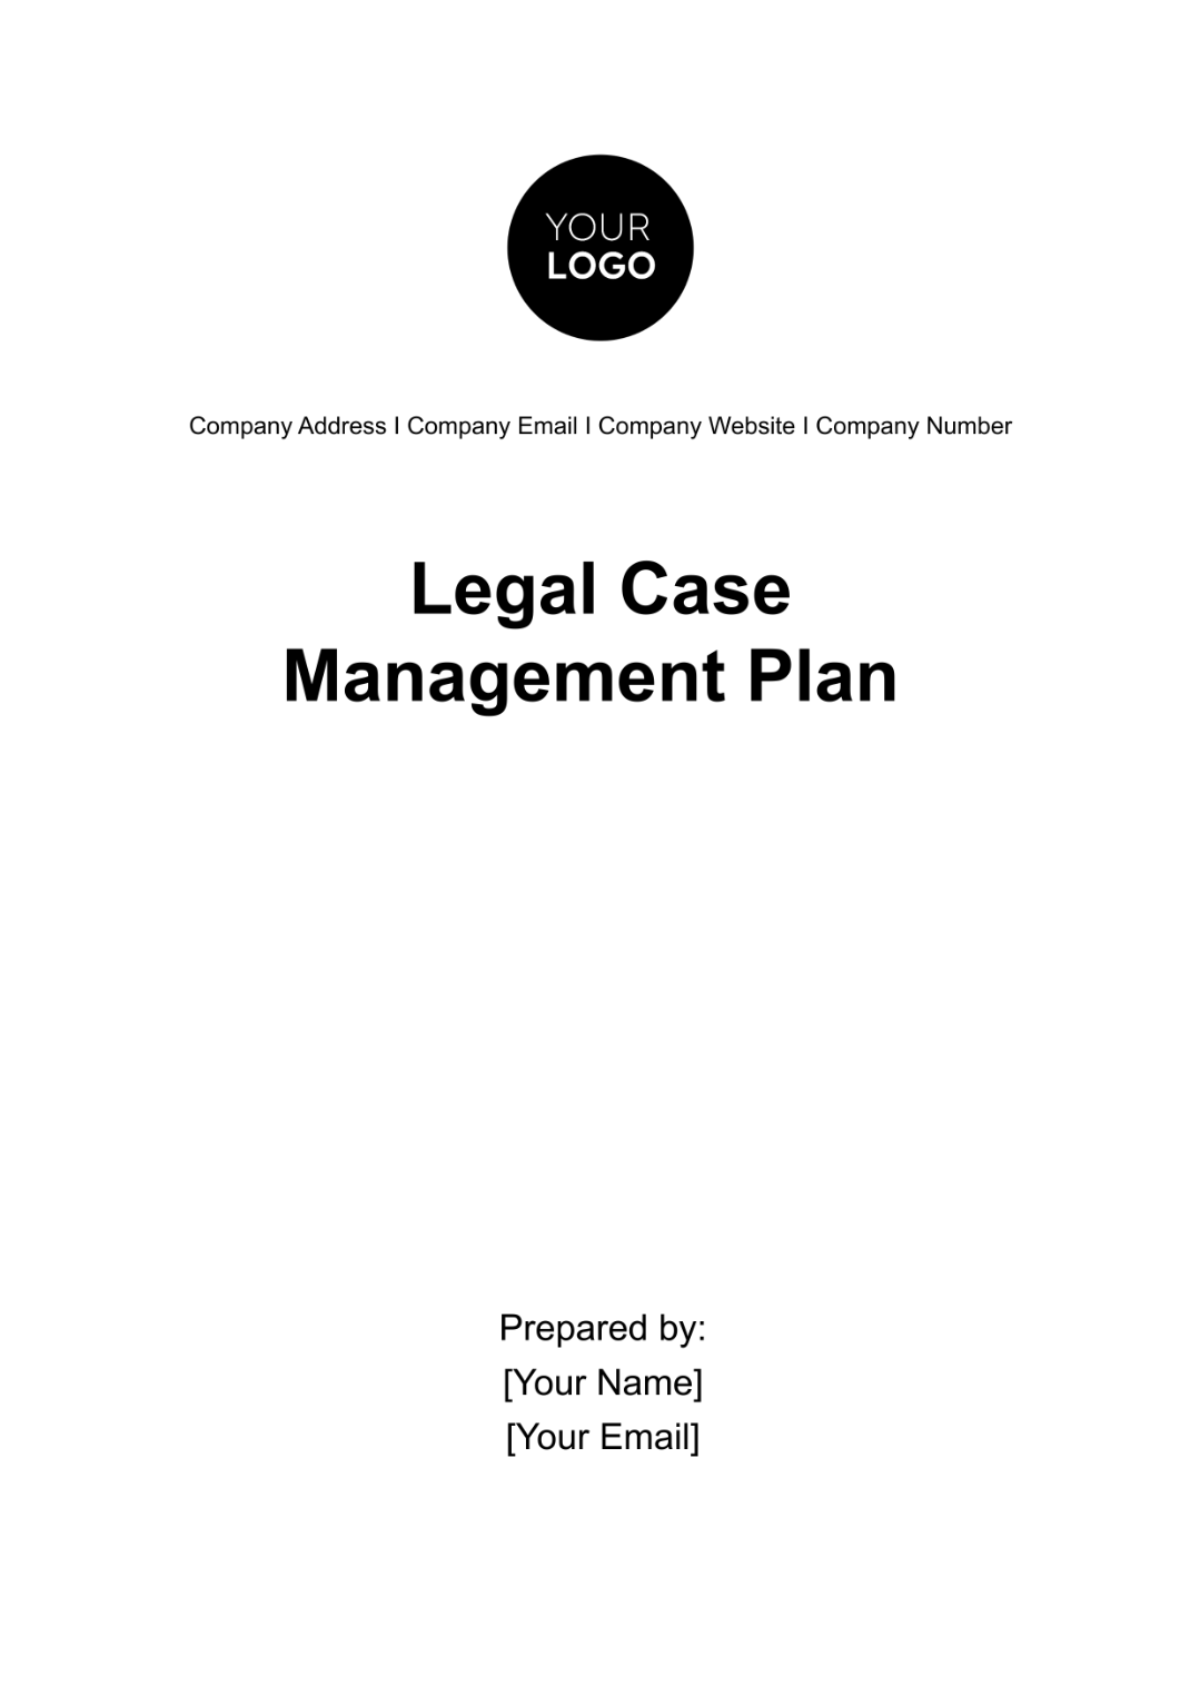 Legal Case Management Plan Template